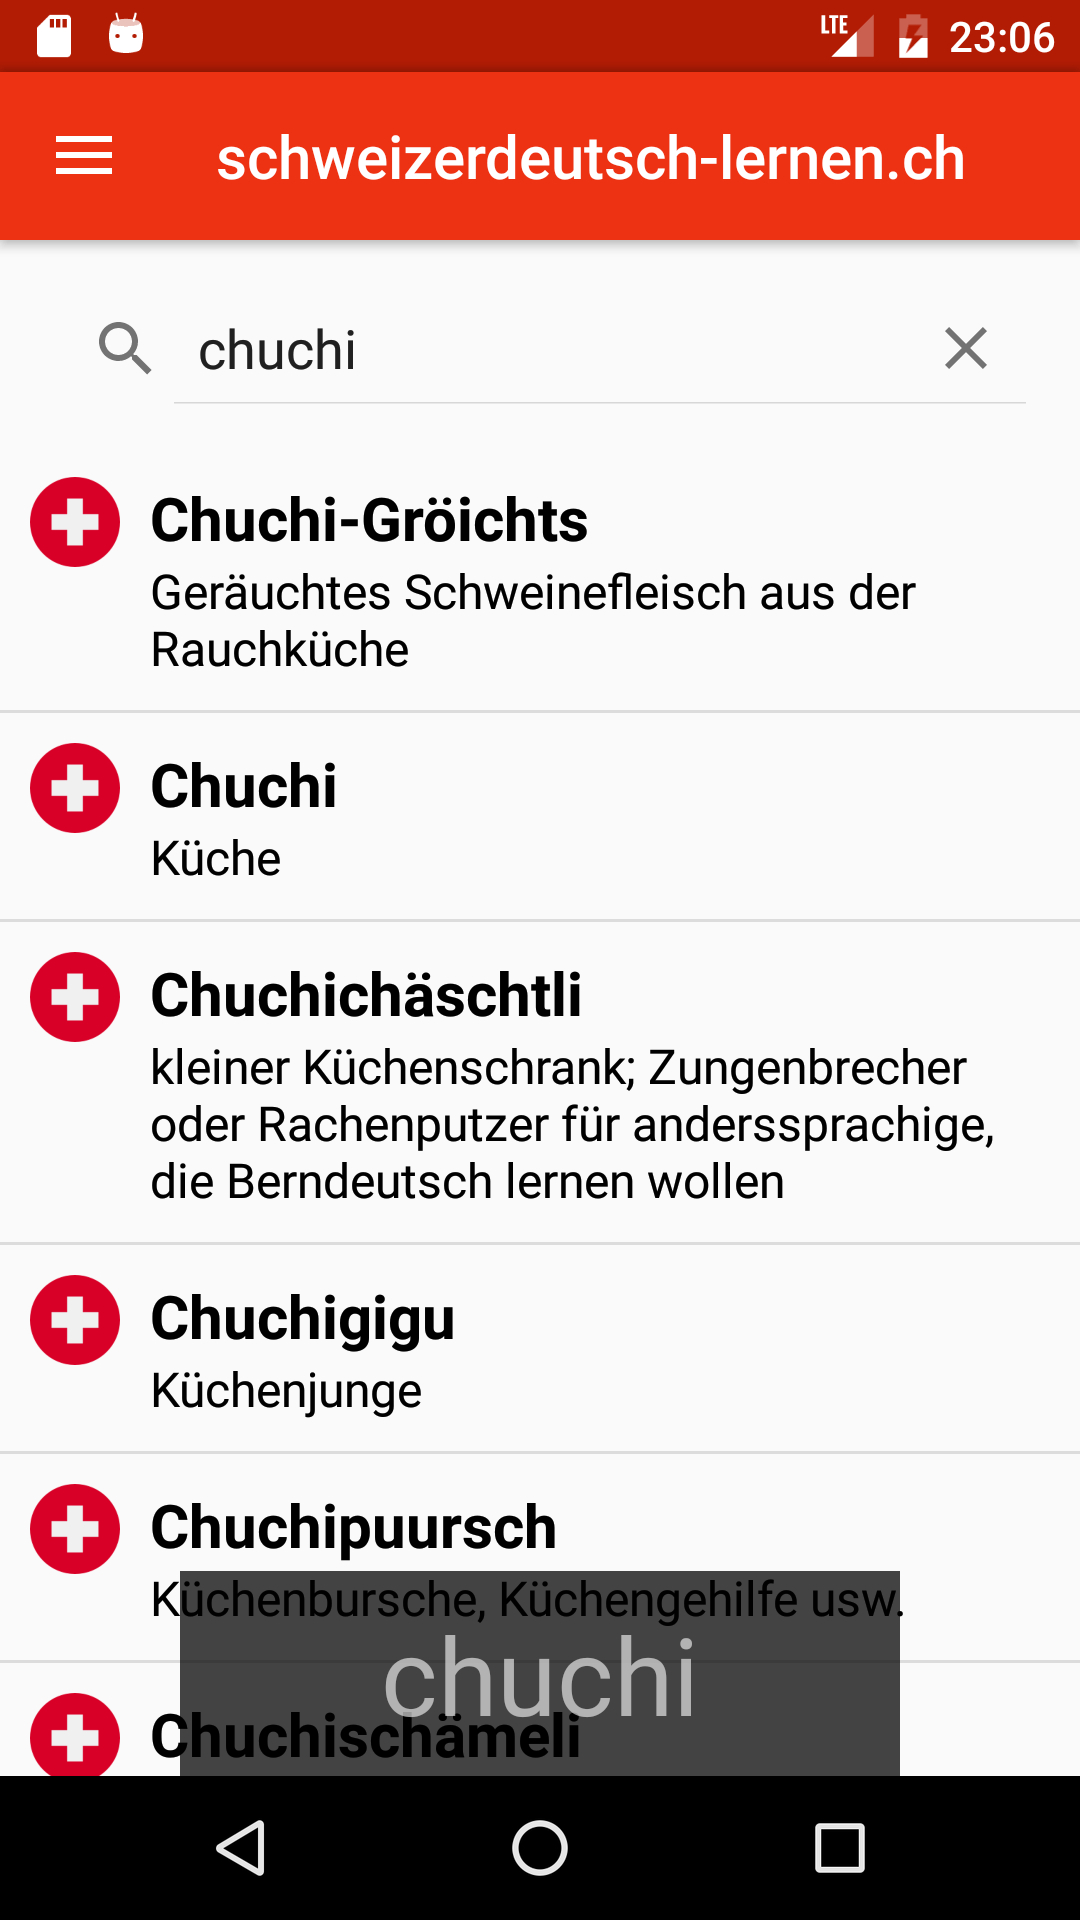 Schweizerdeutschl Lernen App - Chüchichäschtli ganzes Schweizerdeutsche Zungenbrecher